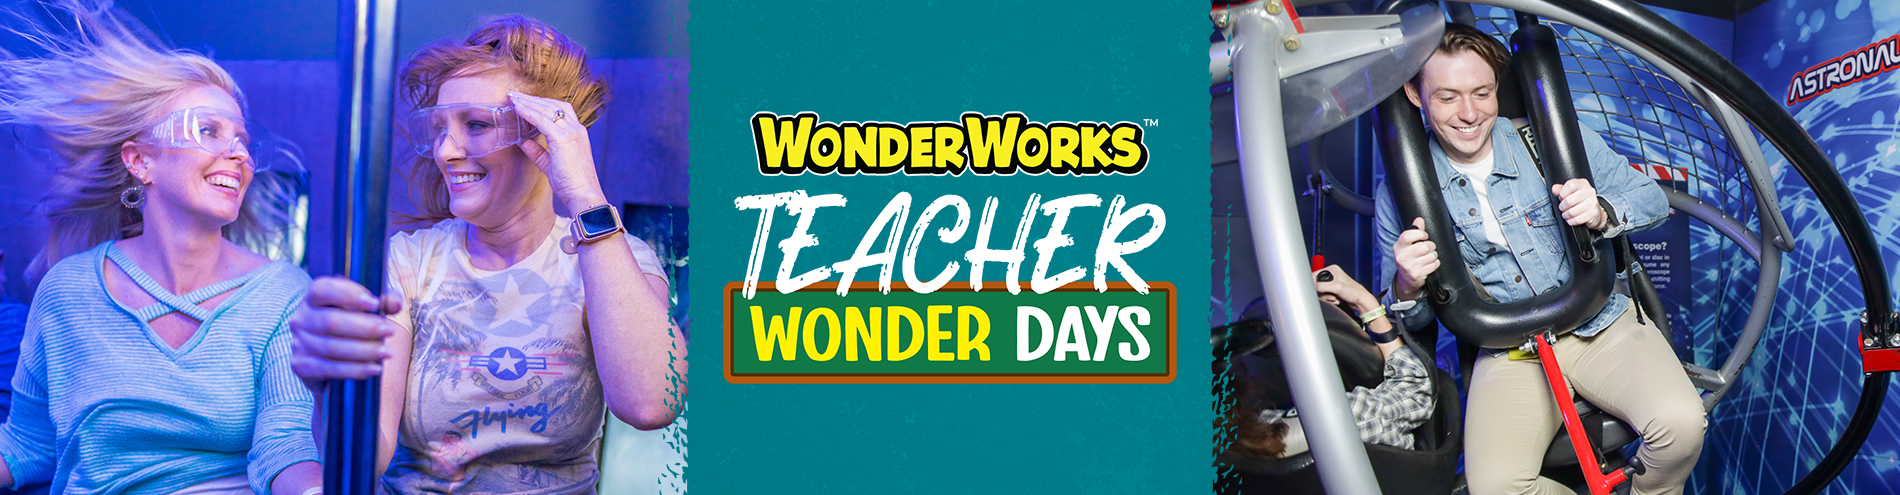 Teacher Wonder Days Header